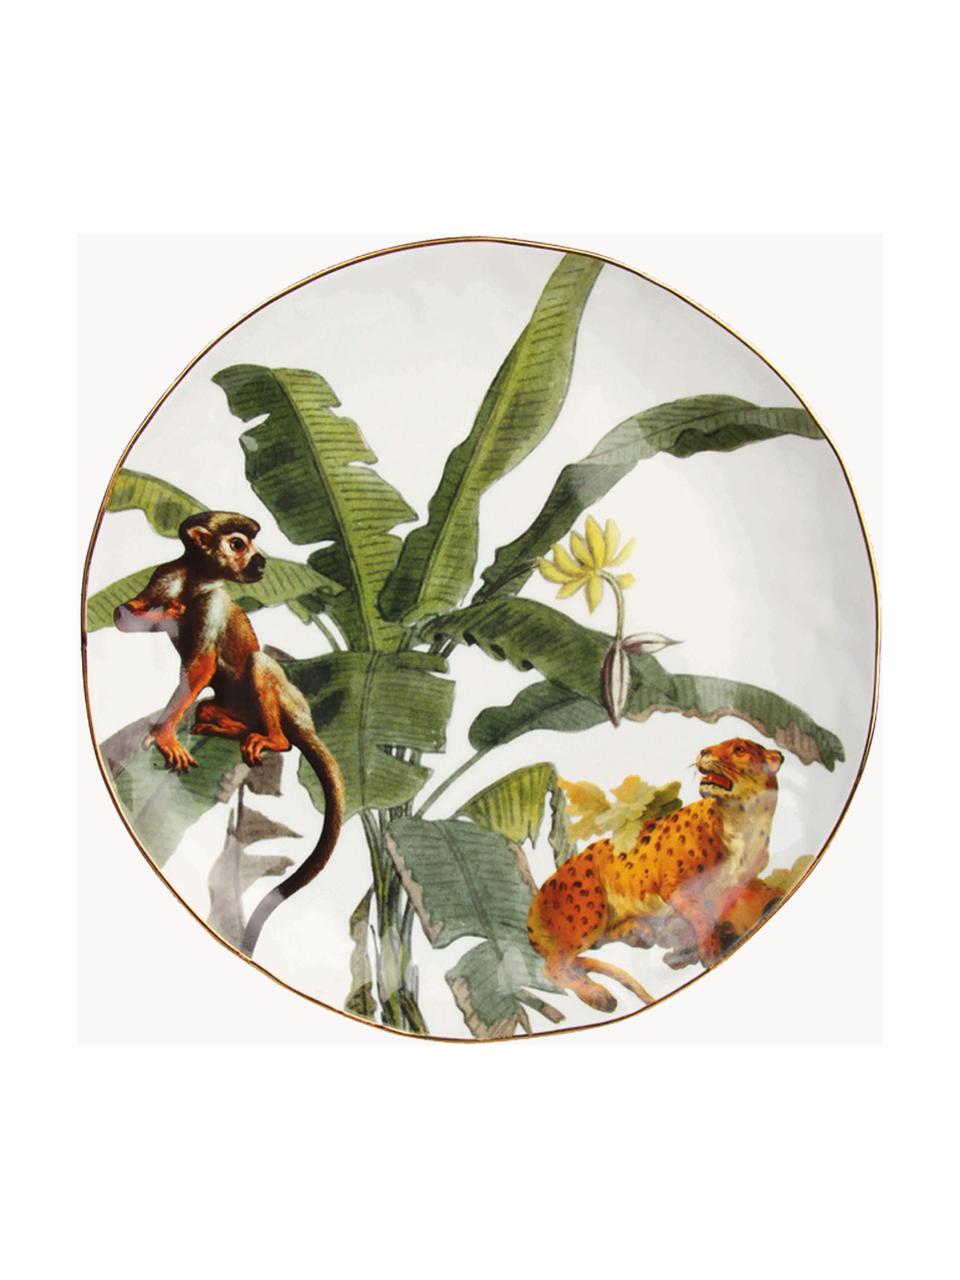 Sada snídaňových talířů s tropickým vzorem Animaux, 4 díly, Porcelán, Více barev, Ø 20 cm